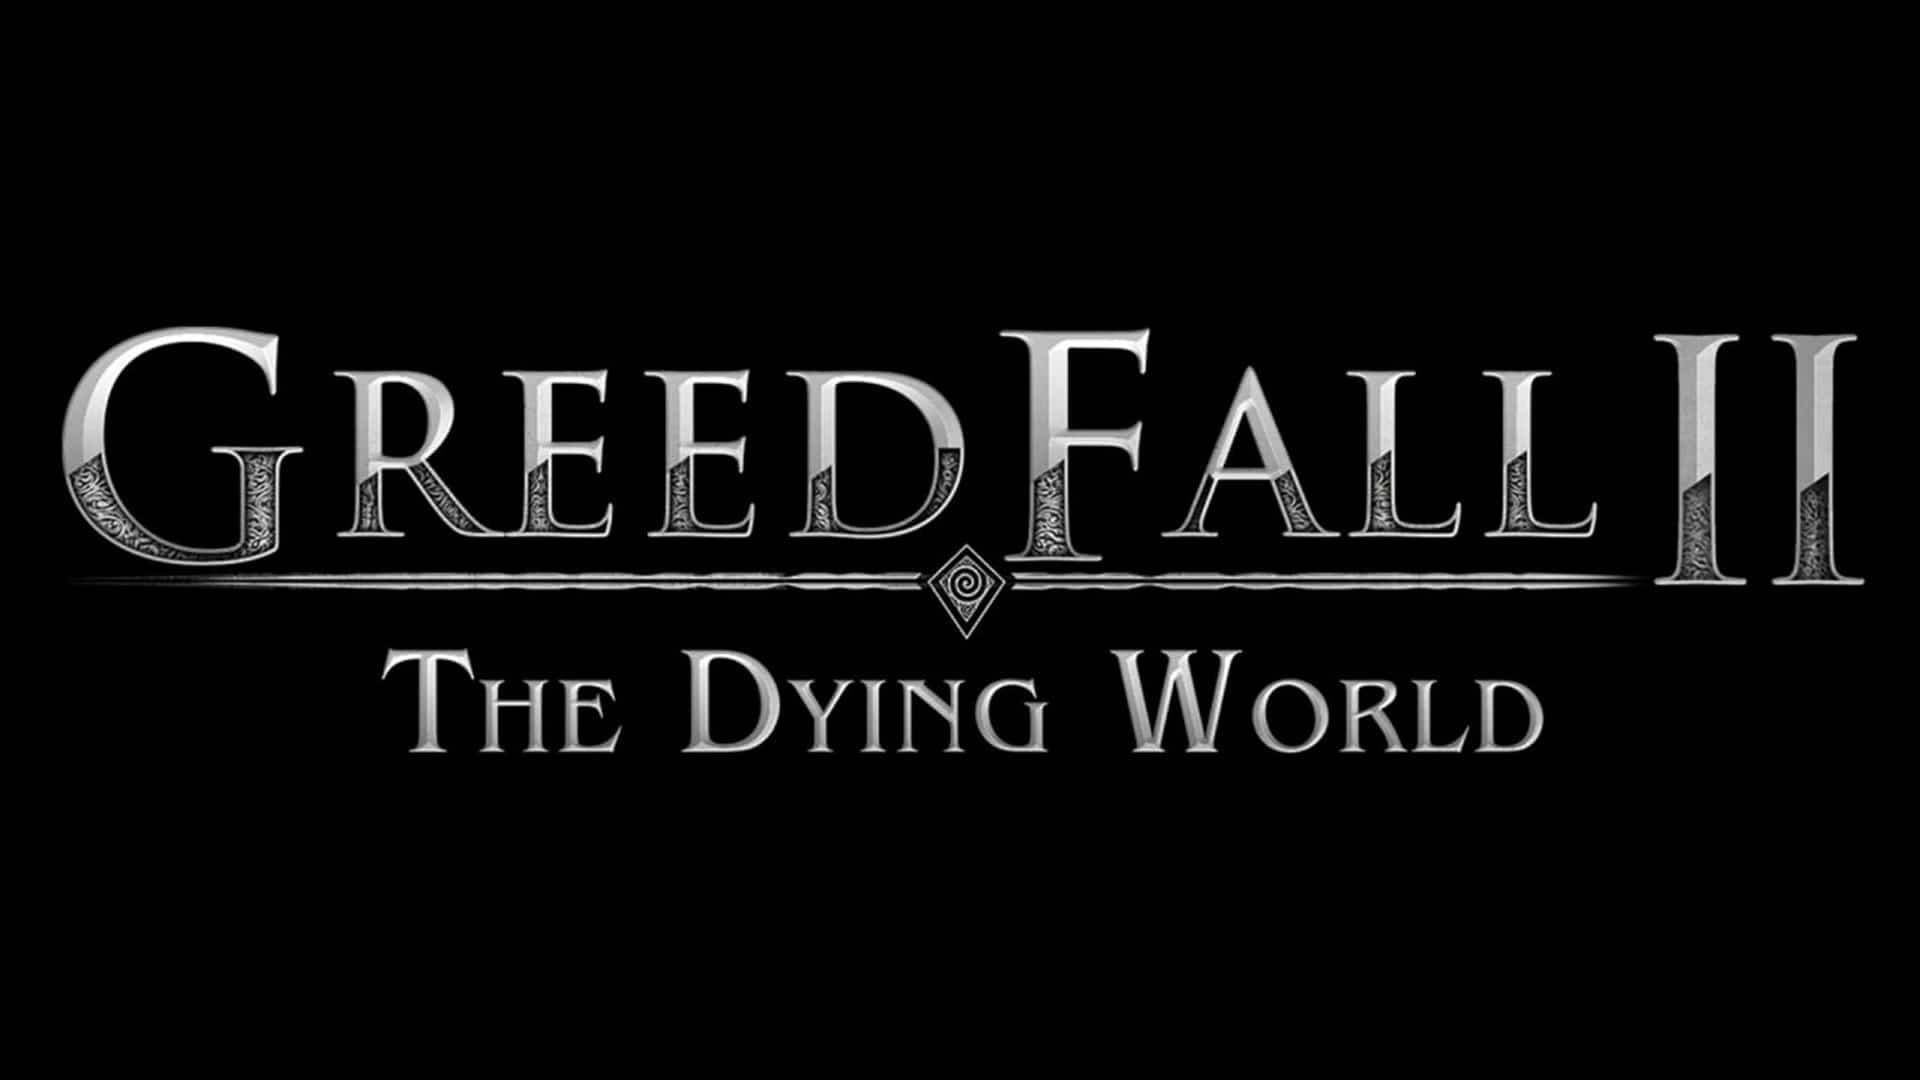 GreedFall 2 The Dying World anunciado para PC y consolas, GamersRD